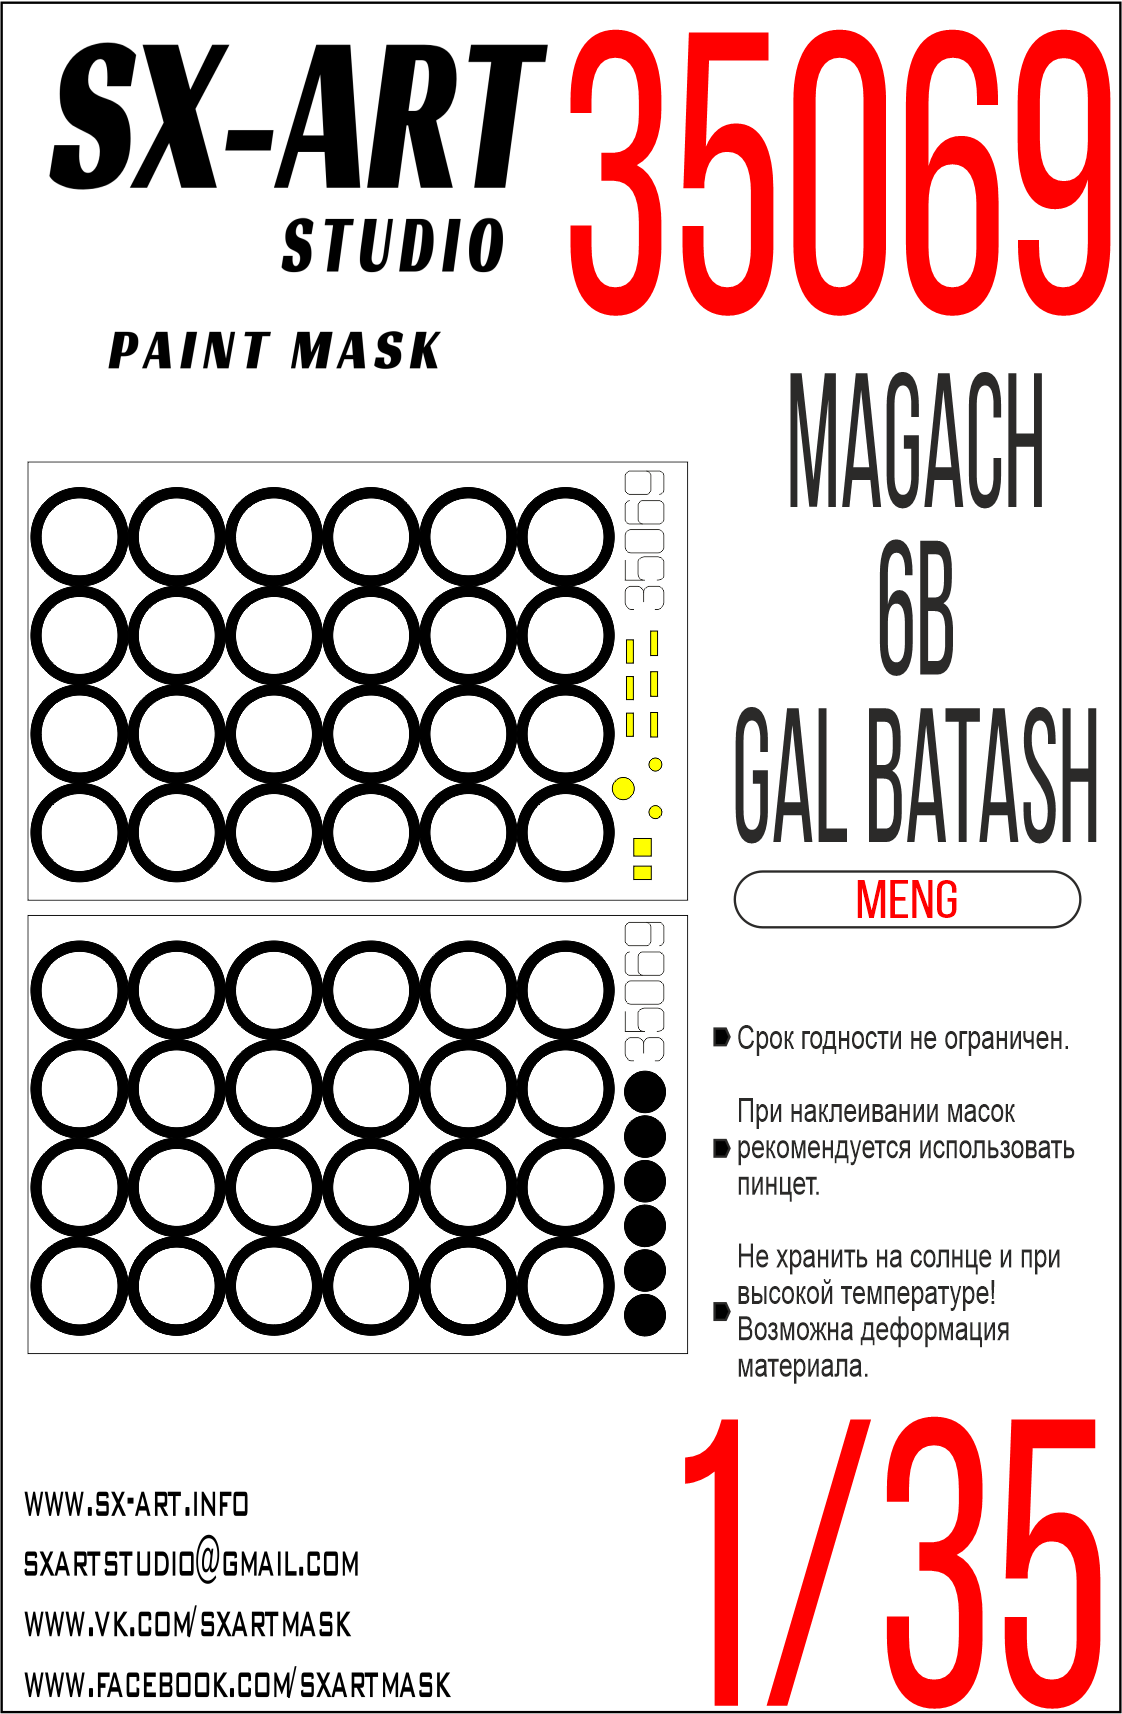 Paint Mask 1/35 Magach 6B GAL (Meng)